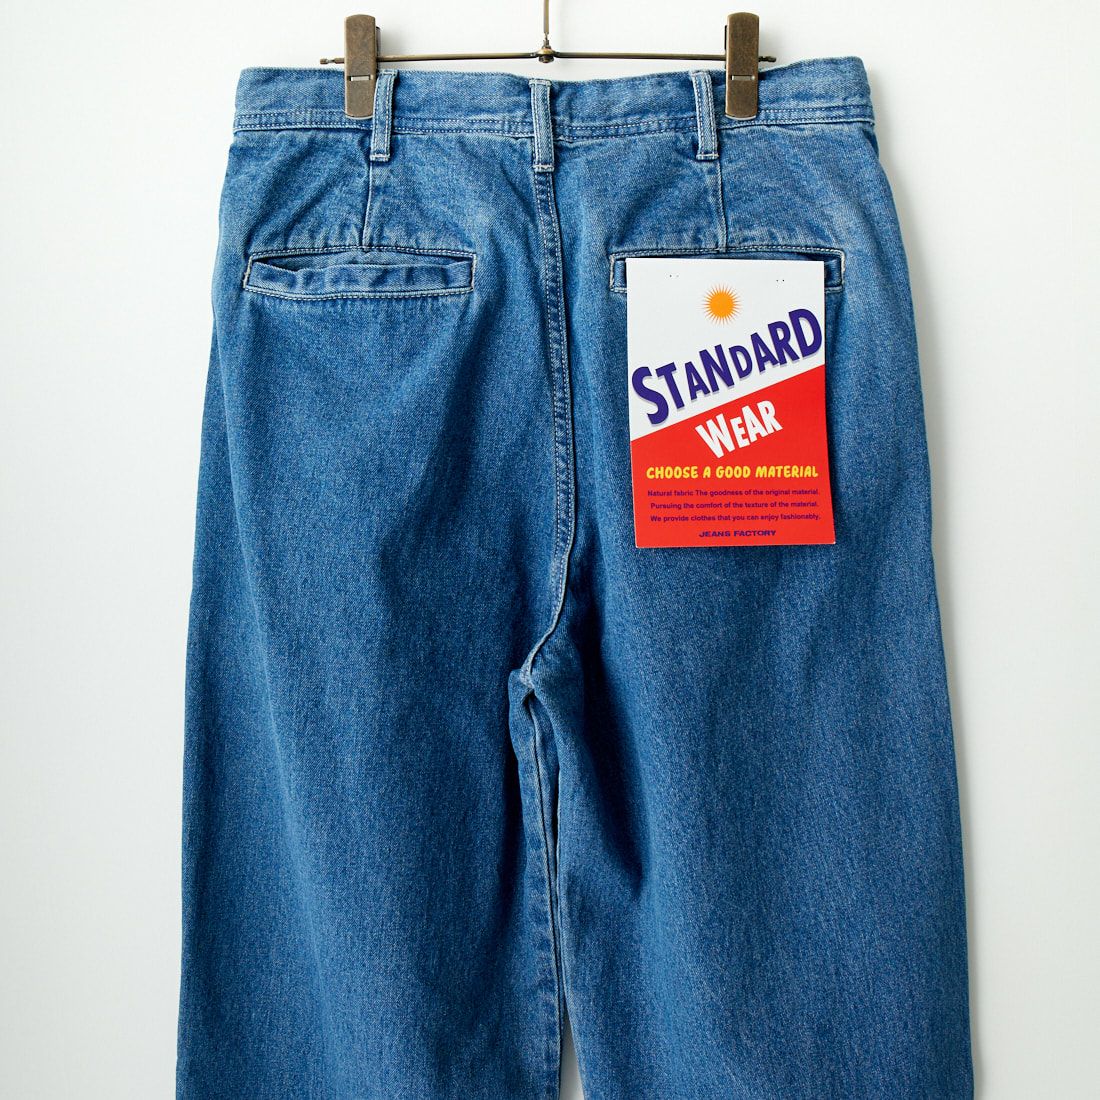 Jeans Factory Clothes [ジーンズファクトリークローズ] 2タックデニムワイドパンツ [JFC-224-052] USED